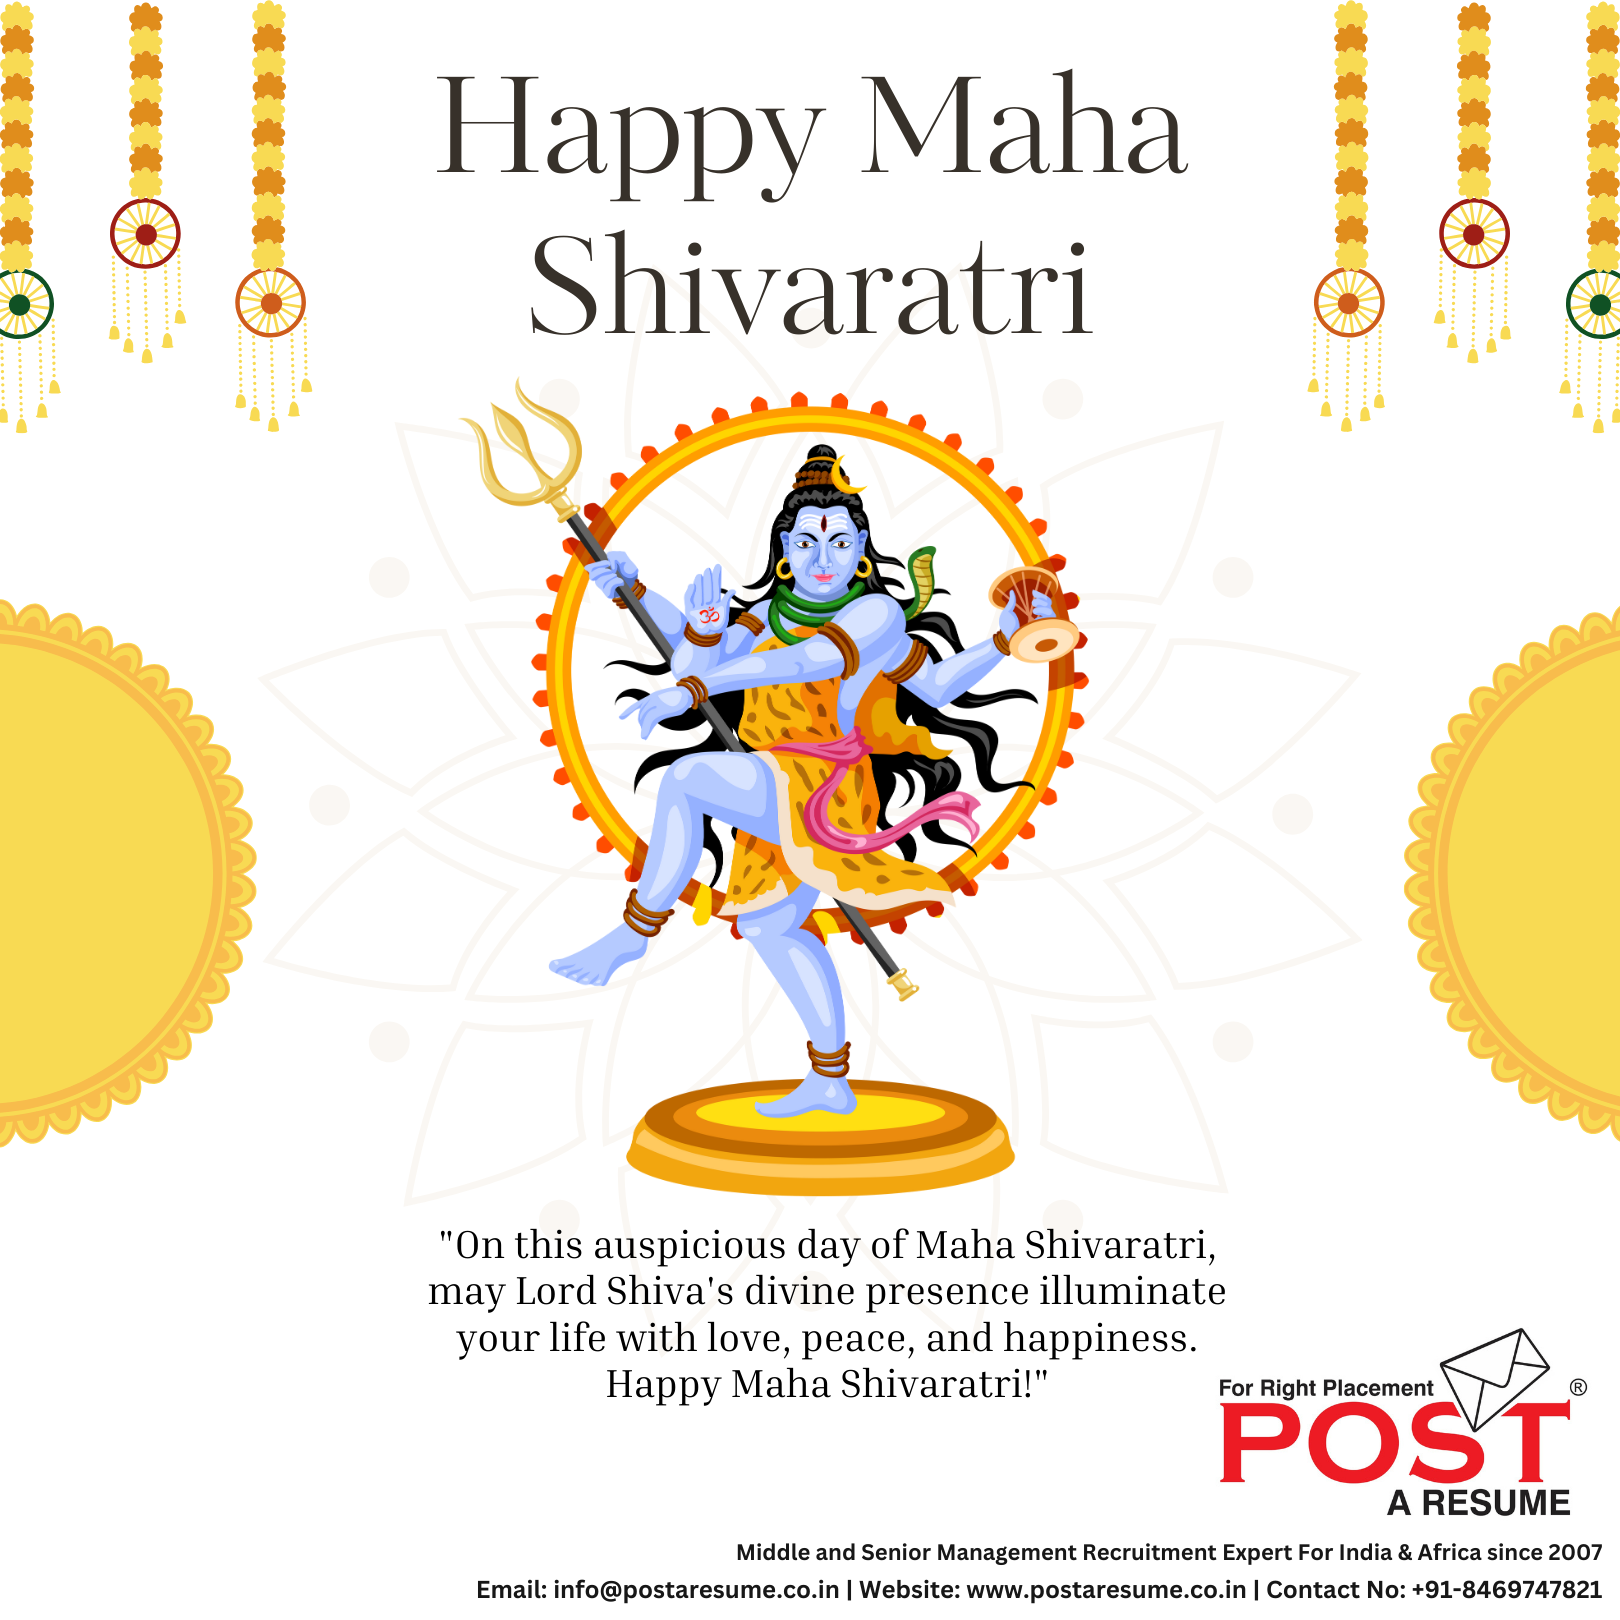 Discover the timeless wisdom of Mahadev this Maha Shivratri! 